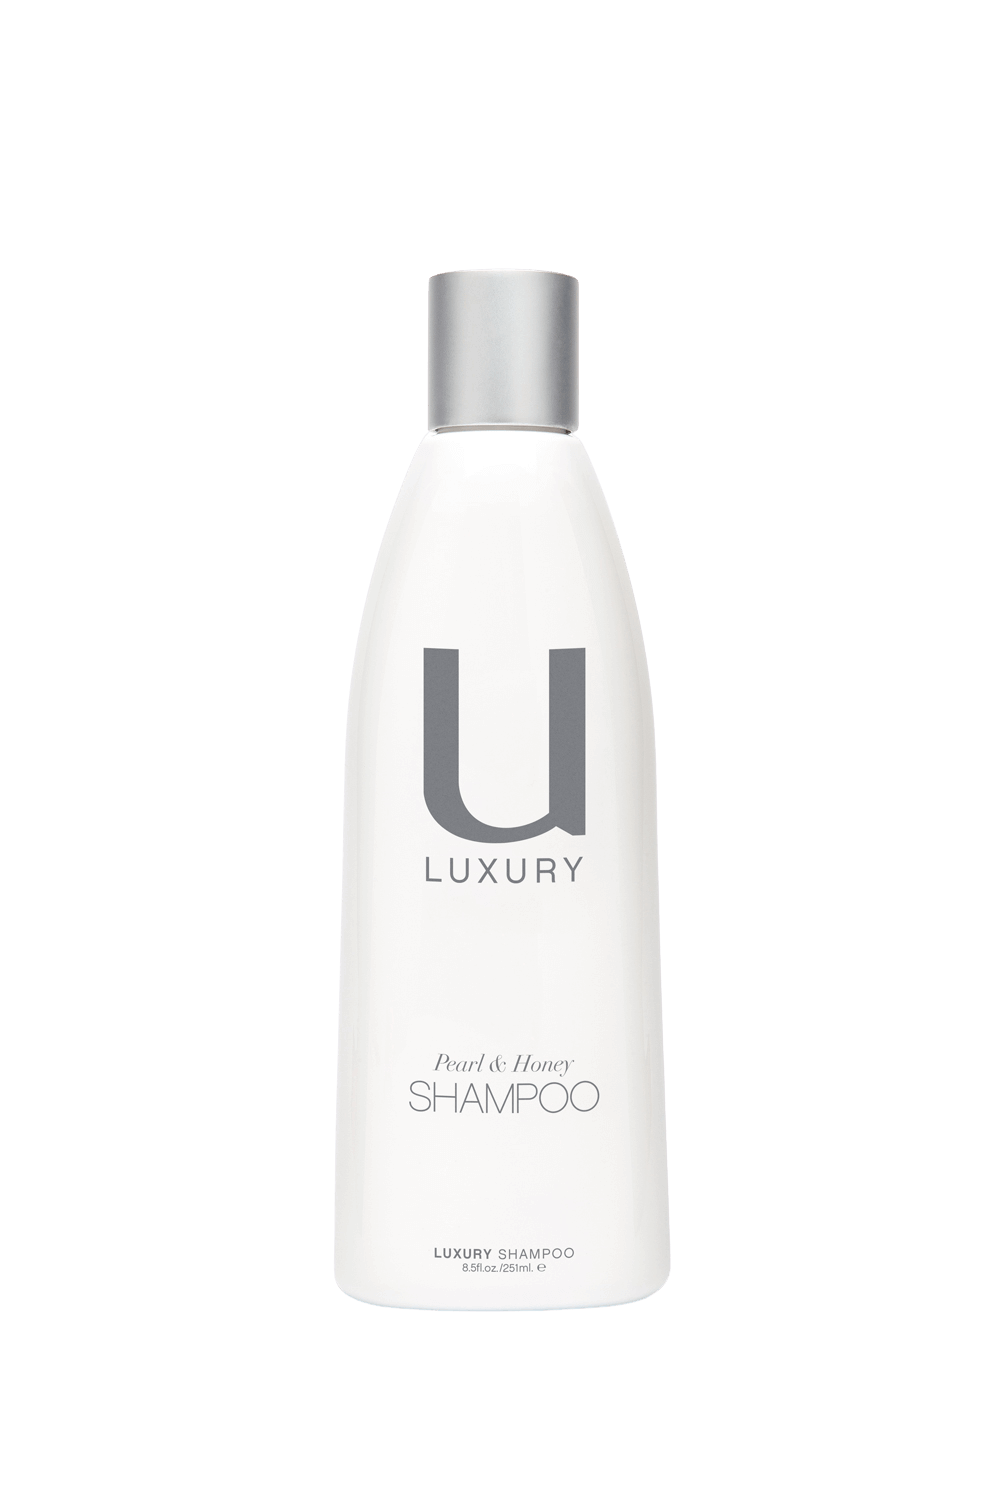 Unite U Luxury Shampoo 8.5oz / 251mL